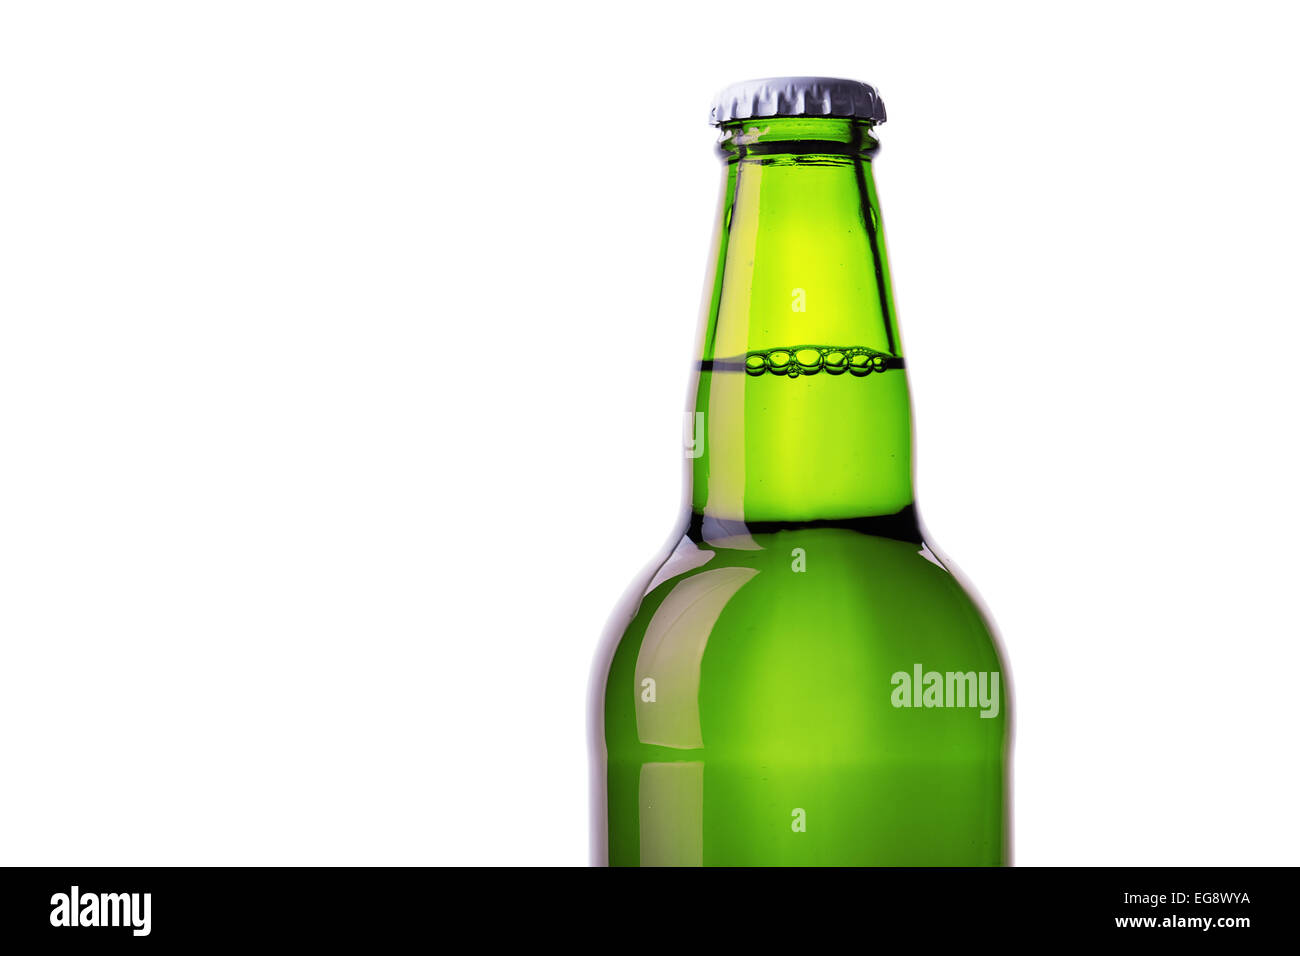 Green alcohol bottle on shiny white background Stock Photo - Alamy